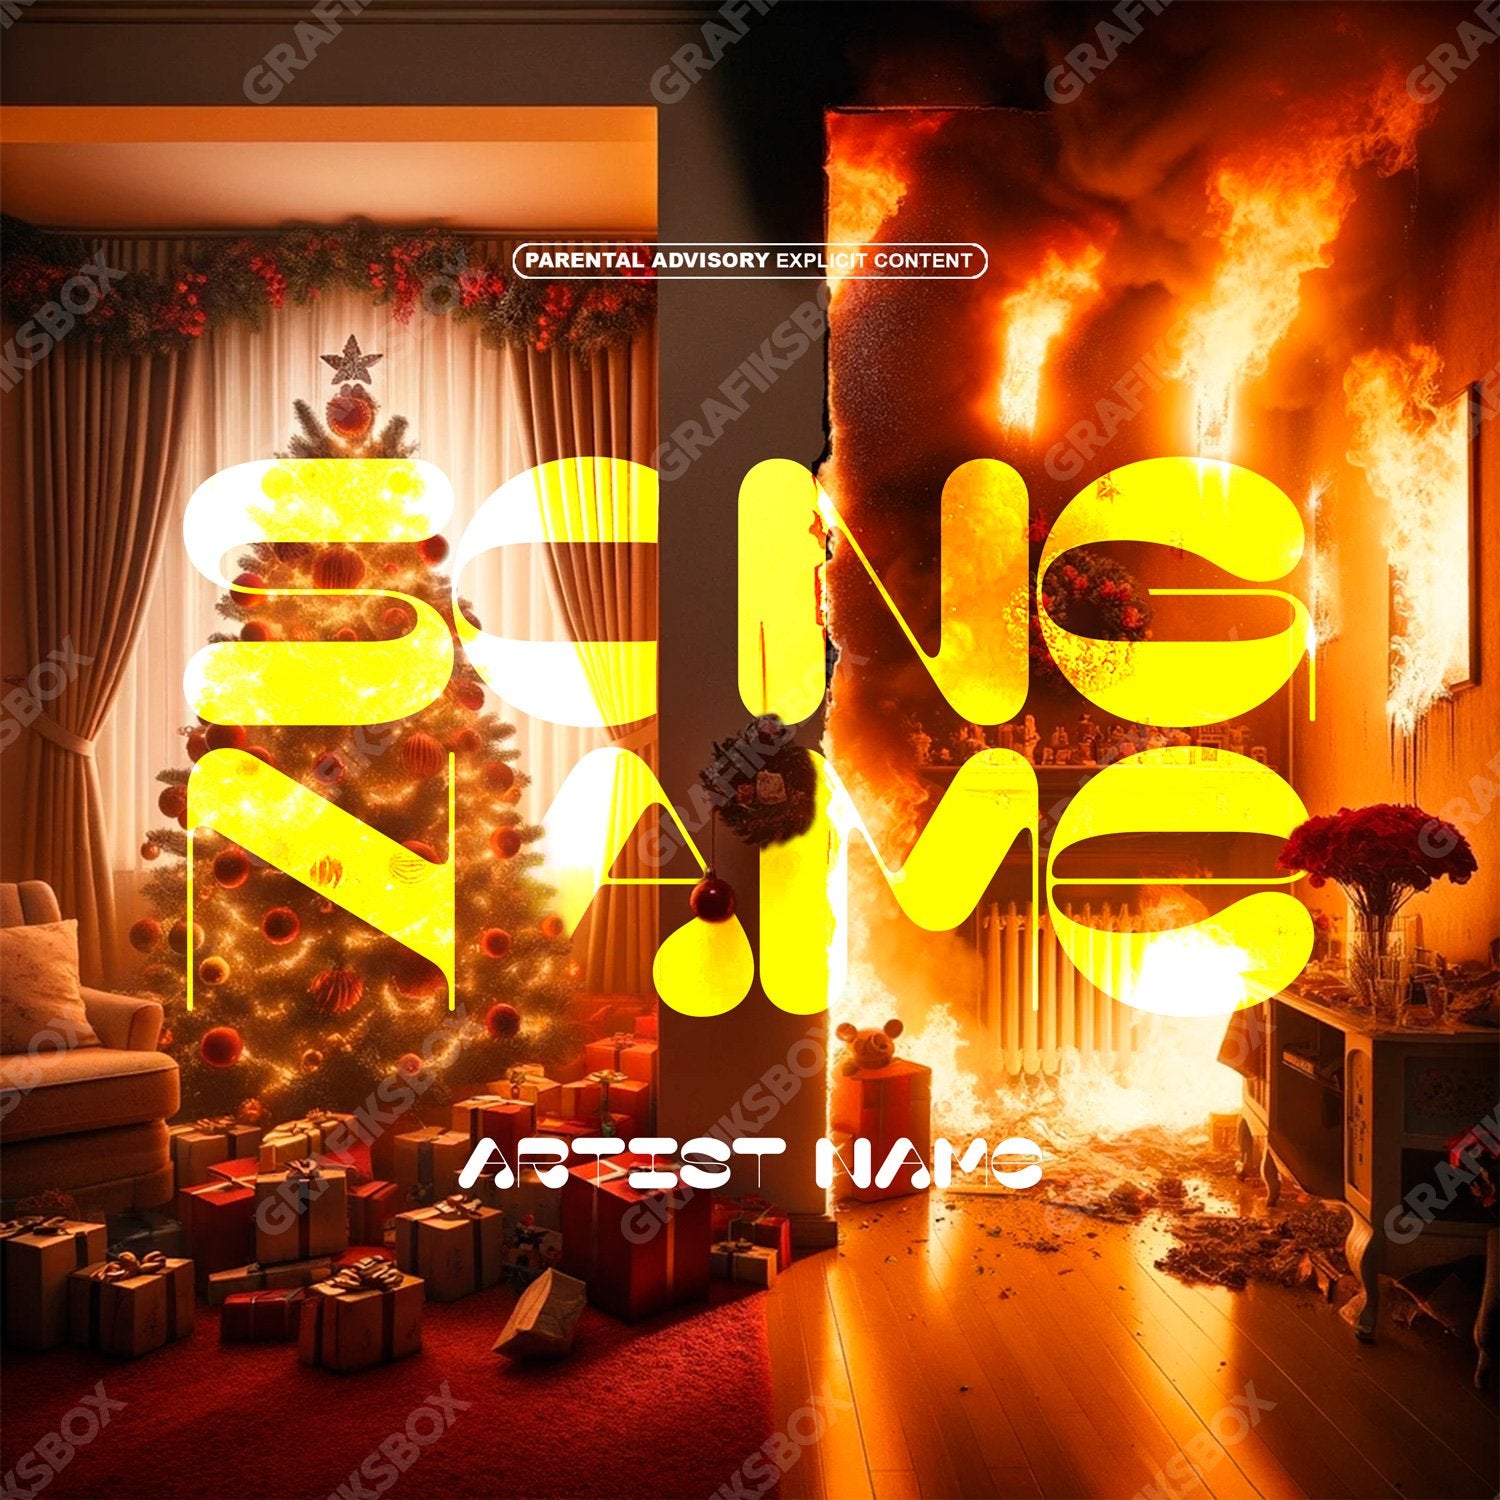 Hot Christmas premade cover art